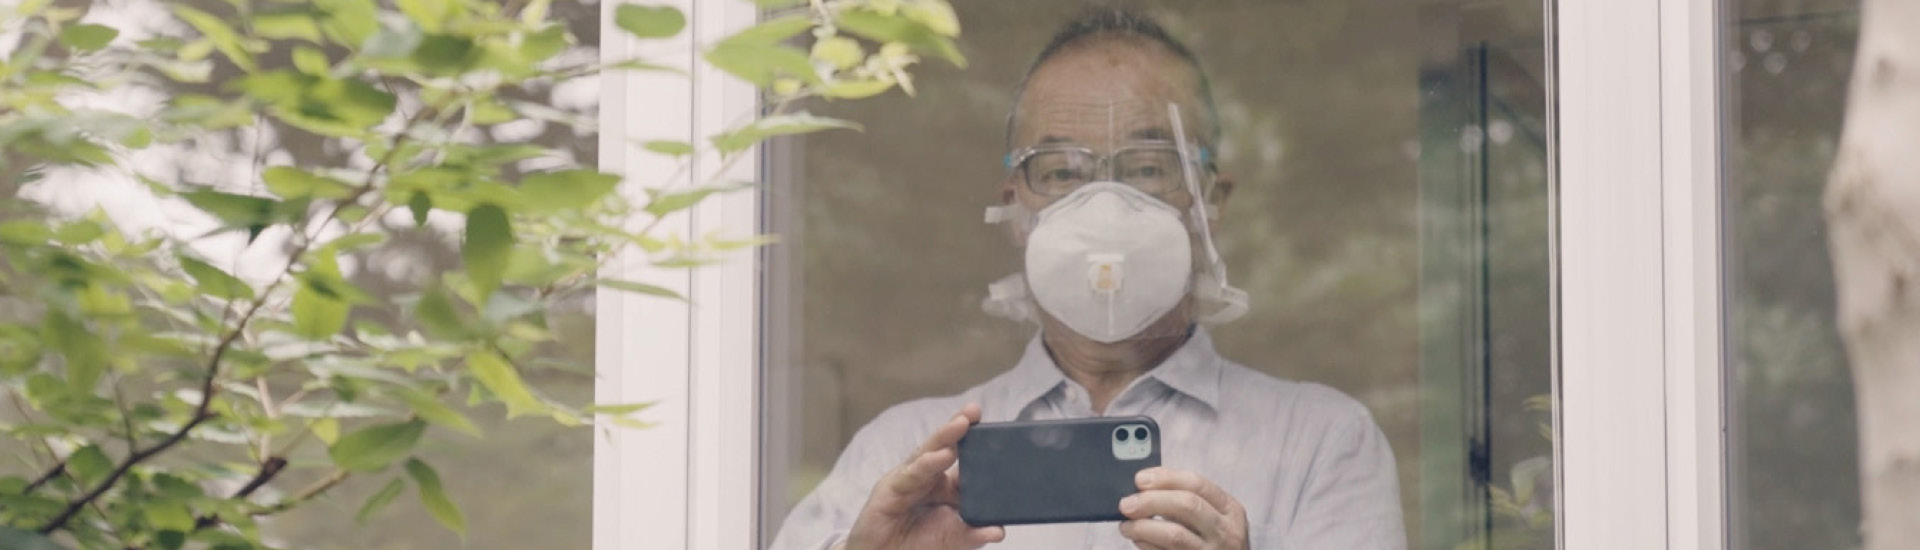 Hiroshi Yoda olha através de janela de vidro segurando um celular para fotografar.